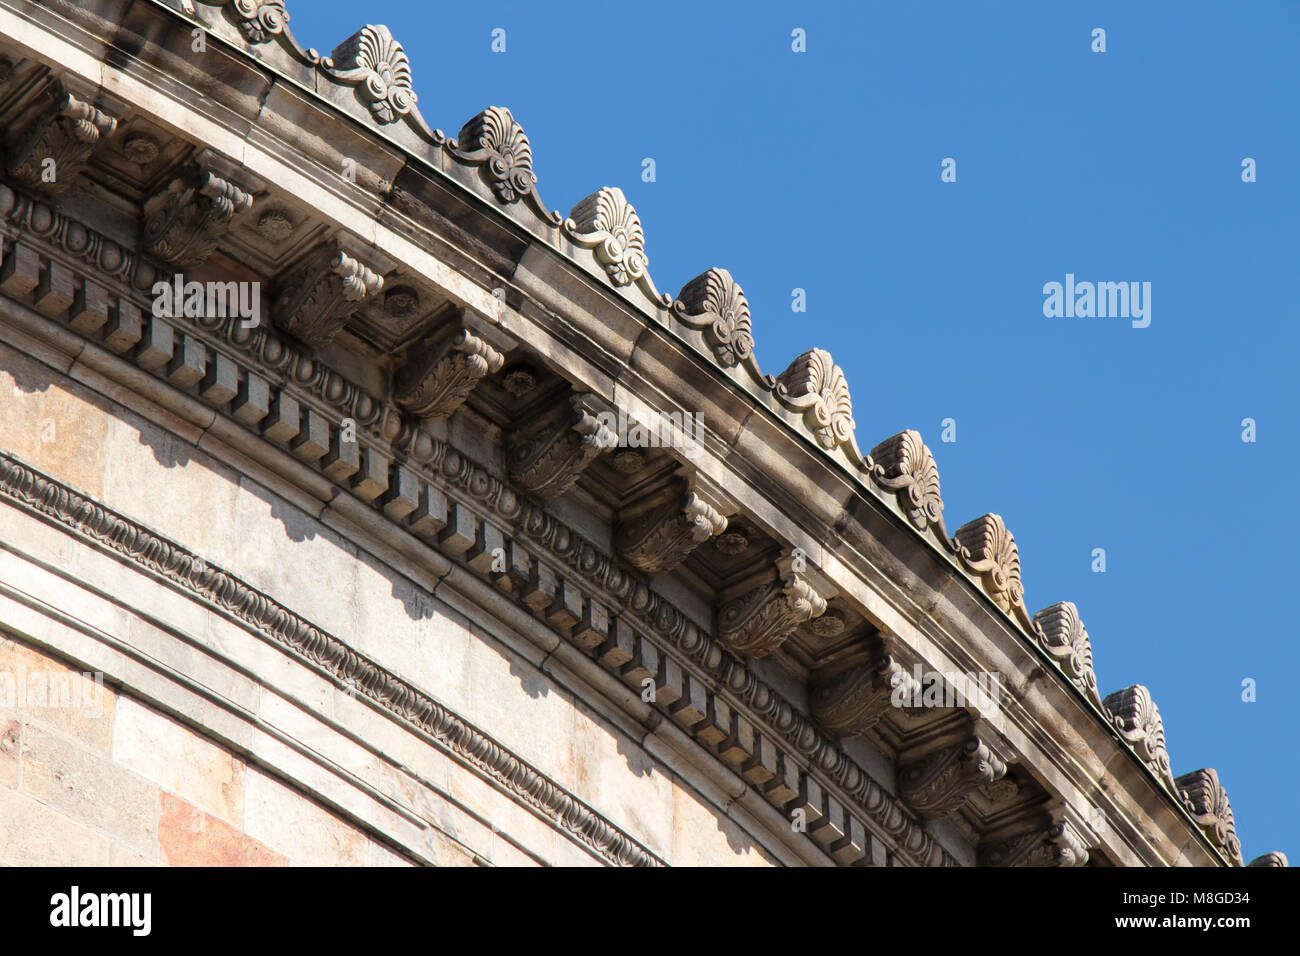 Détail d'un bâtiment néoclassique avec ornements corniche ronde contre un ciel bleu Banque D'Images